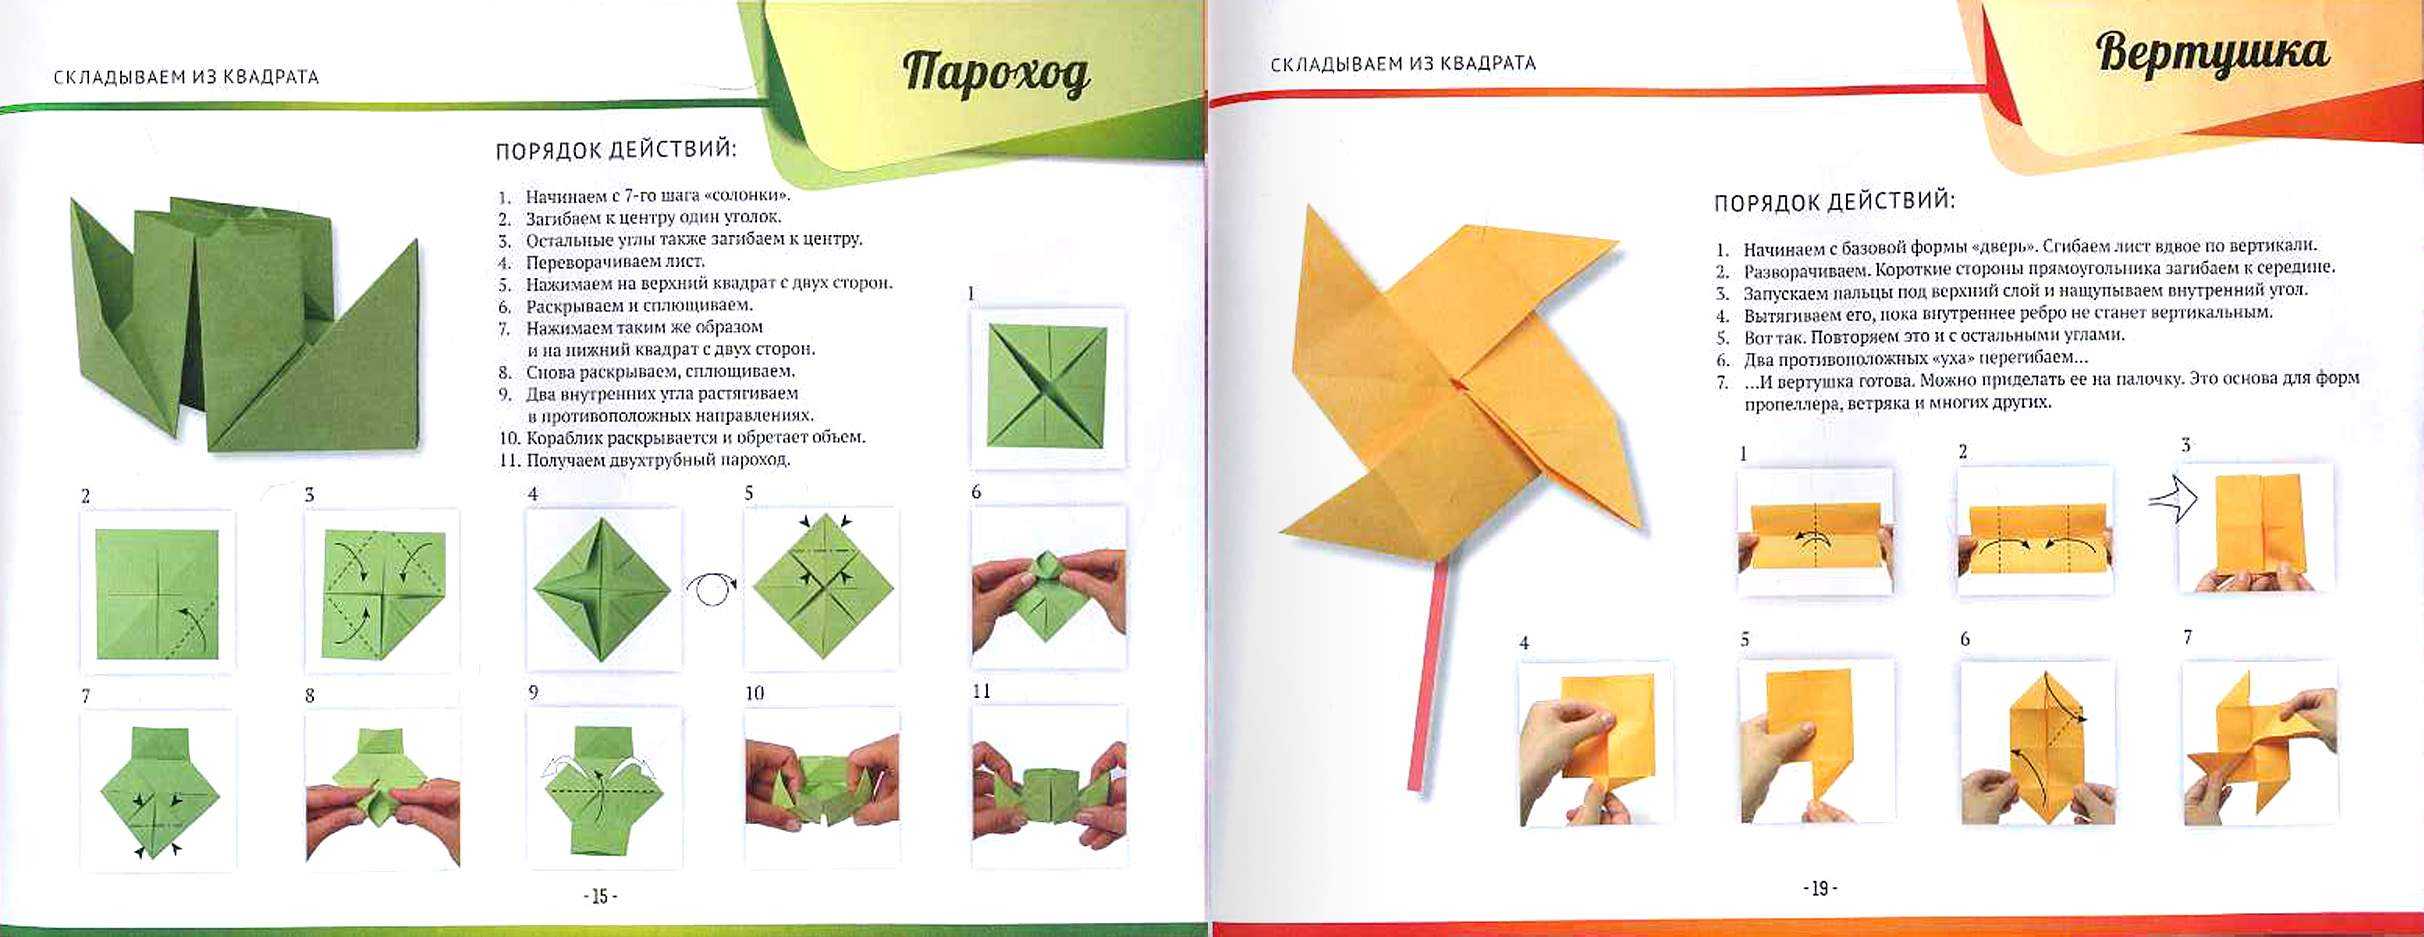 Оригами на новый год своими руками: схемы и идеи